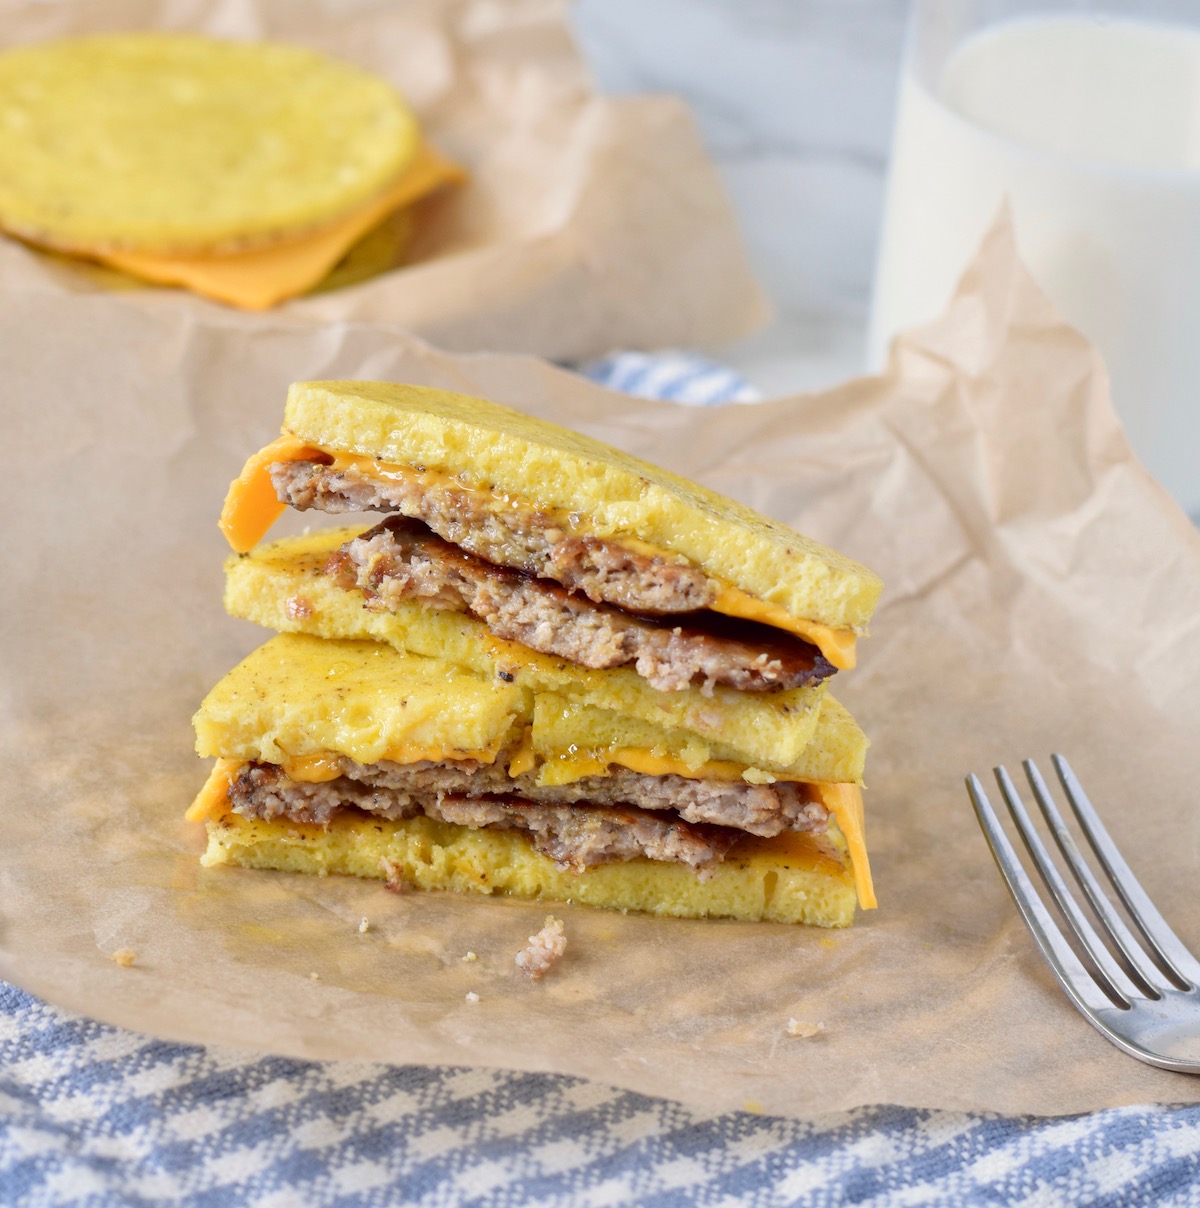 keto breakfast sandwich cut in half